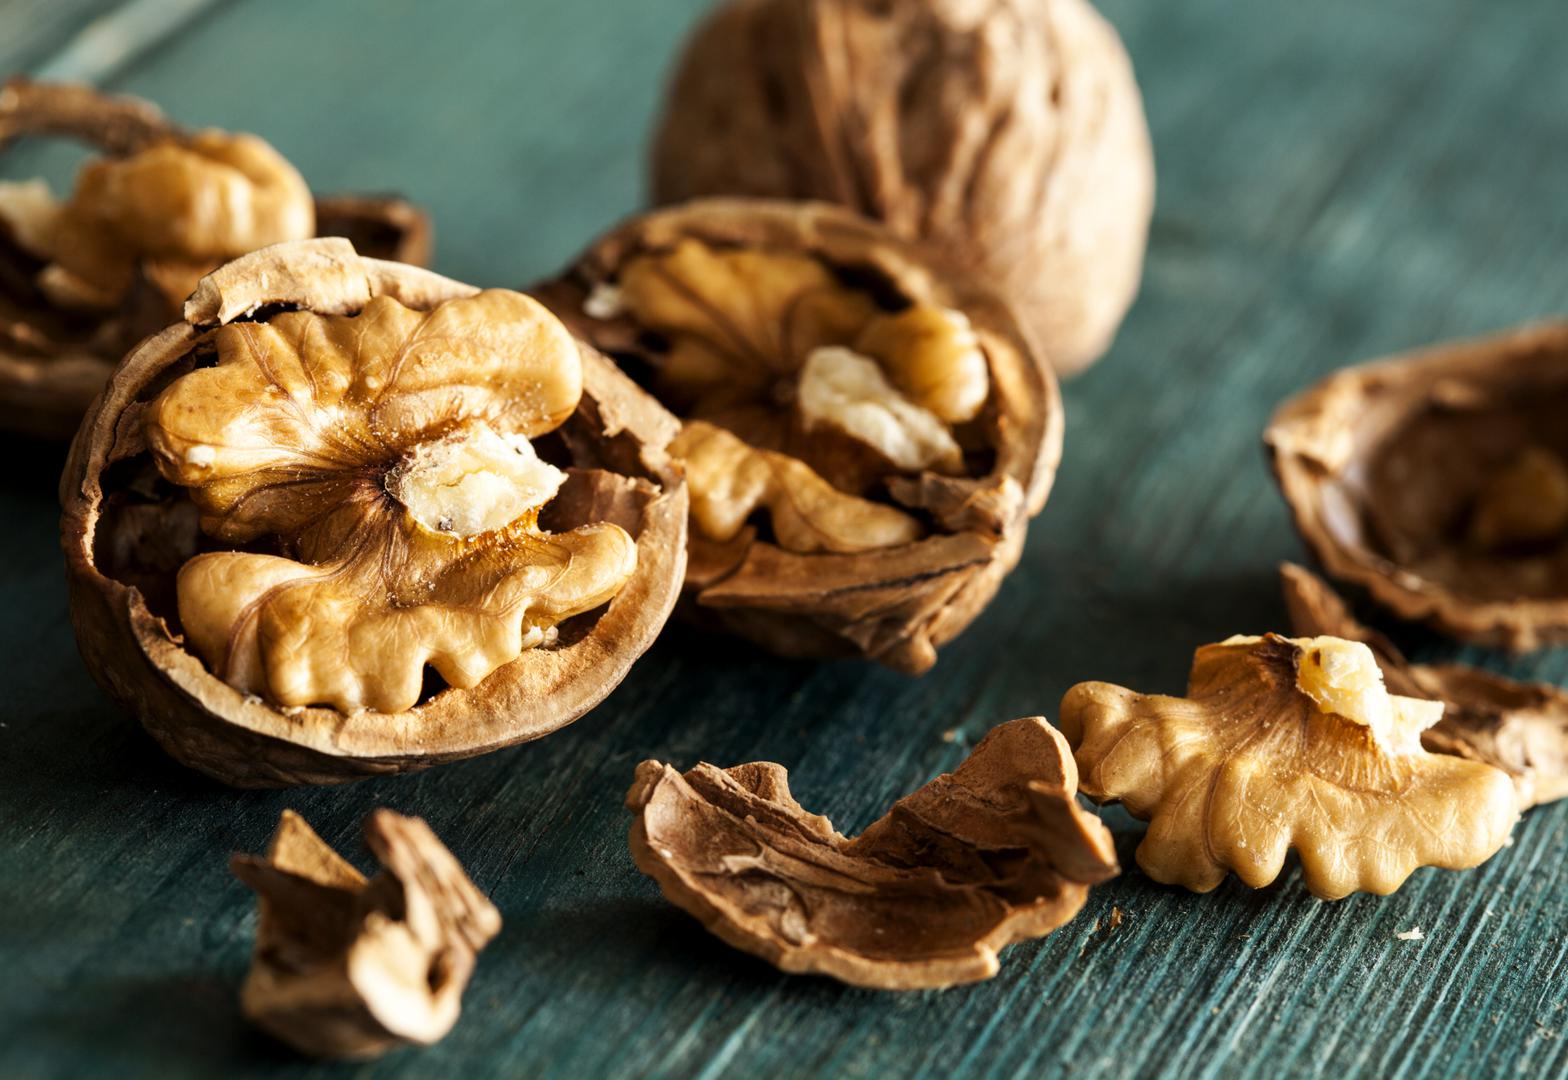 Orasi – Sadrže dvostruko više antioksidansa od drugih orašastih plodova. Istraživanja su pokazala kako orasi imaju svojstva kojima mogu usporiti rast tumora i upola smanjuju mogućnost razvoja raka.